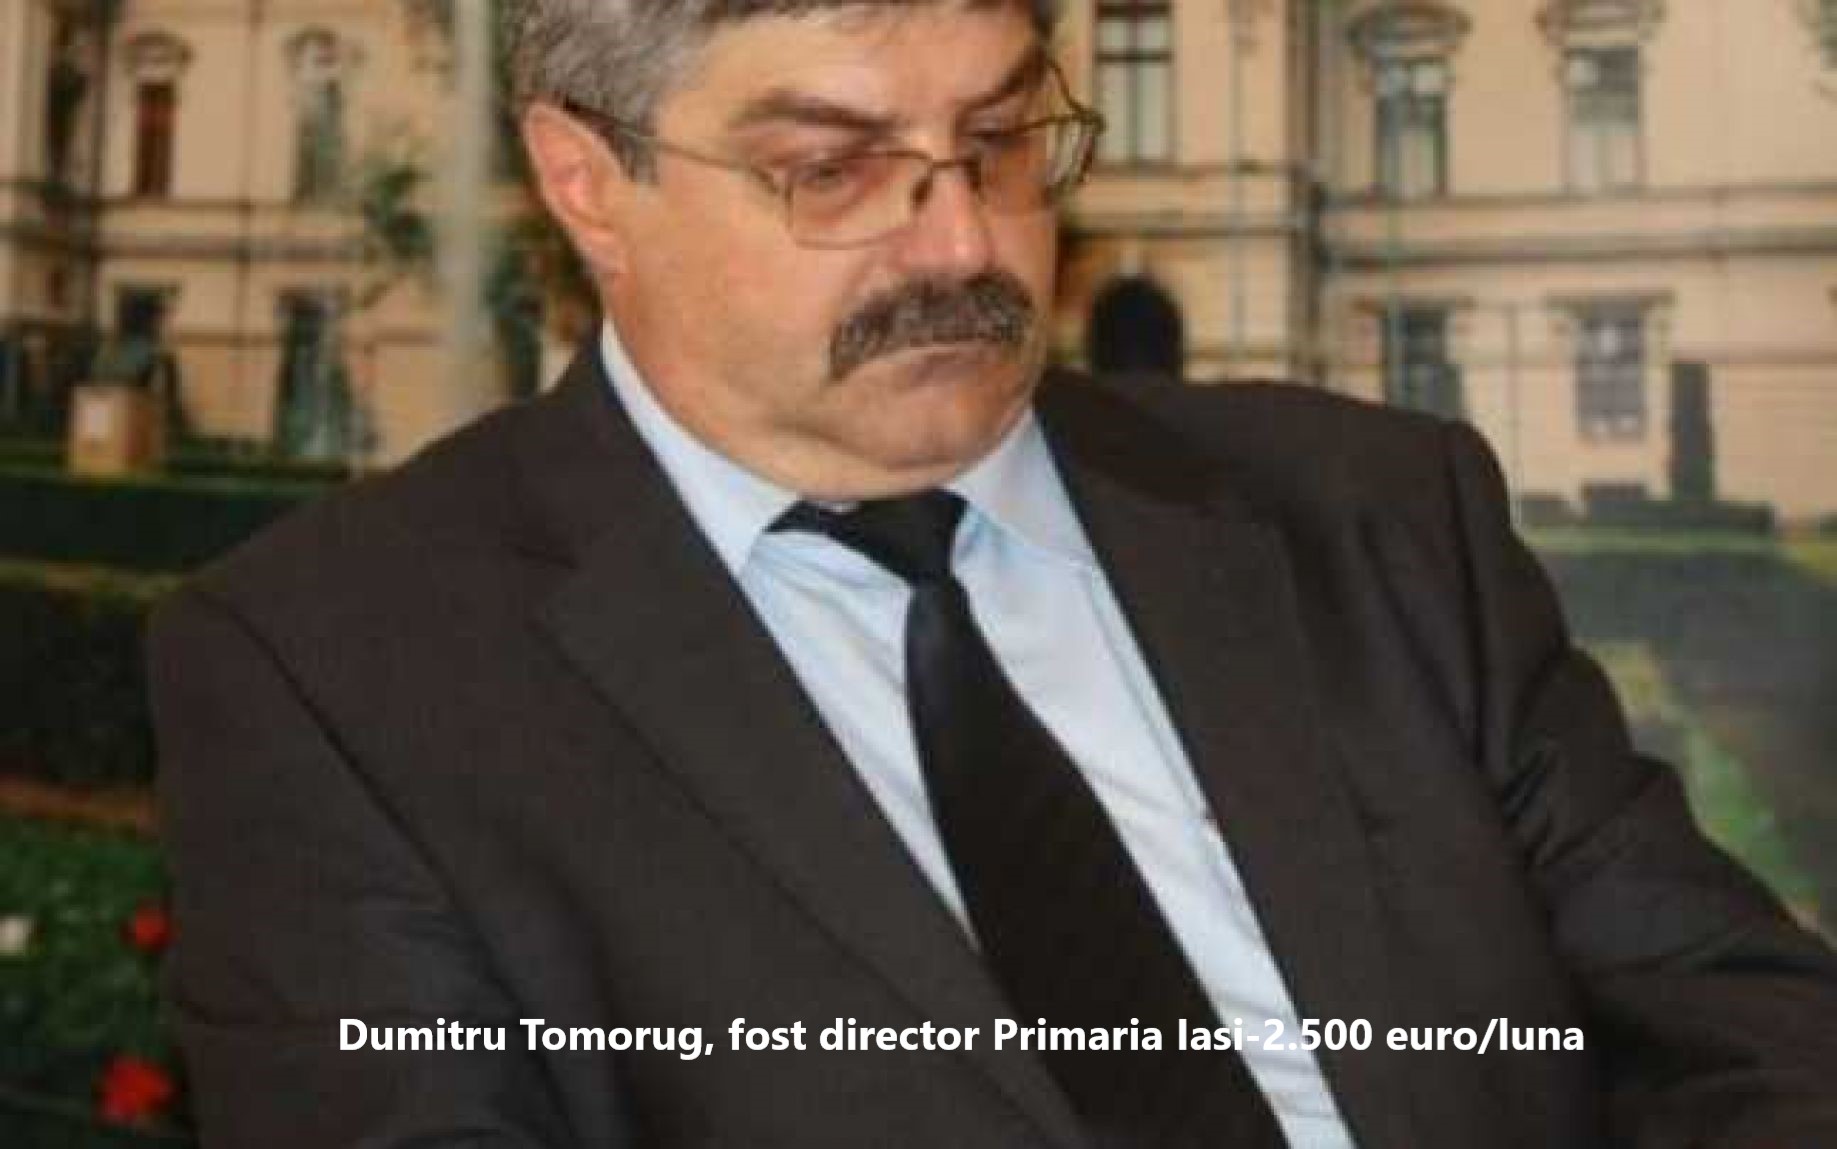 Dumitru Tomorug, fost sef in cadrul Primariei Iasi